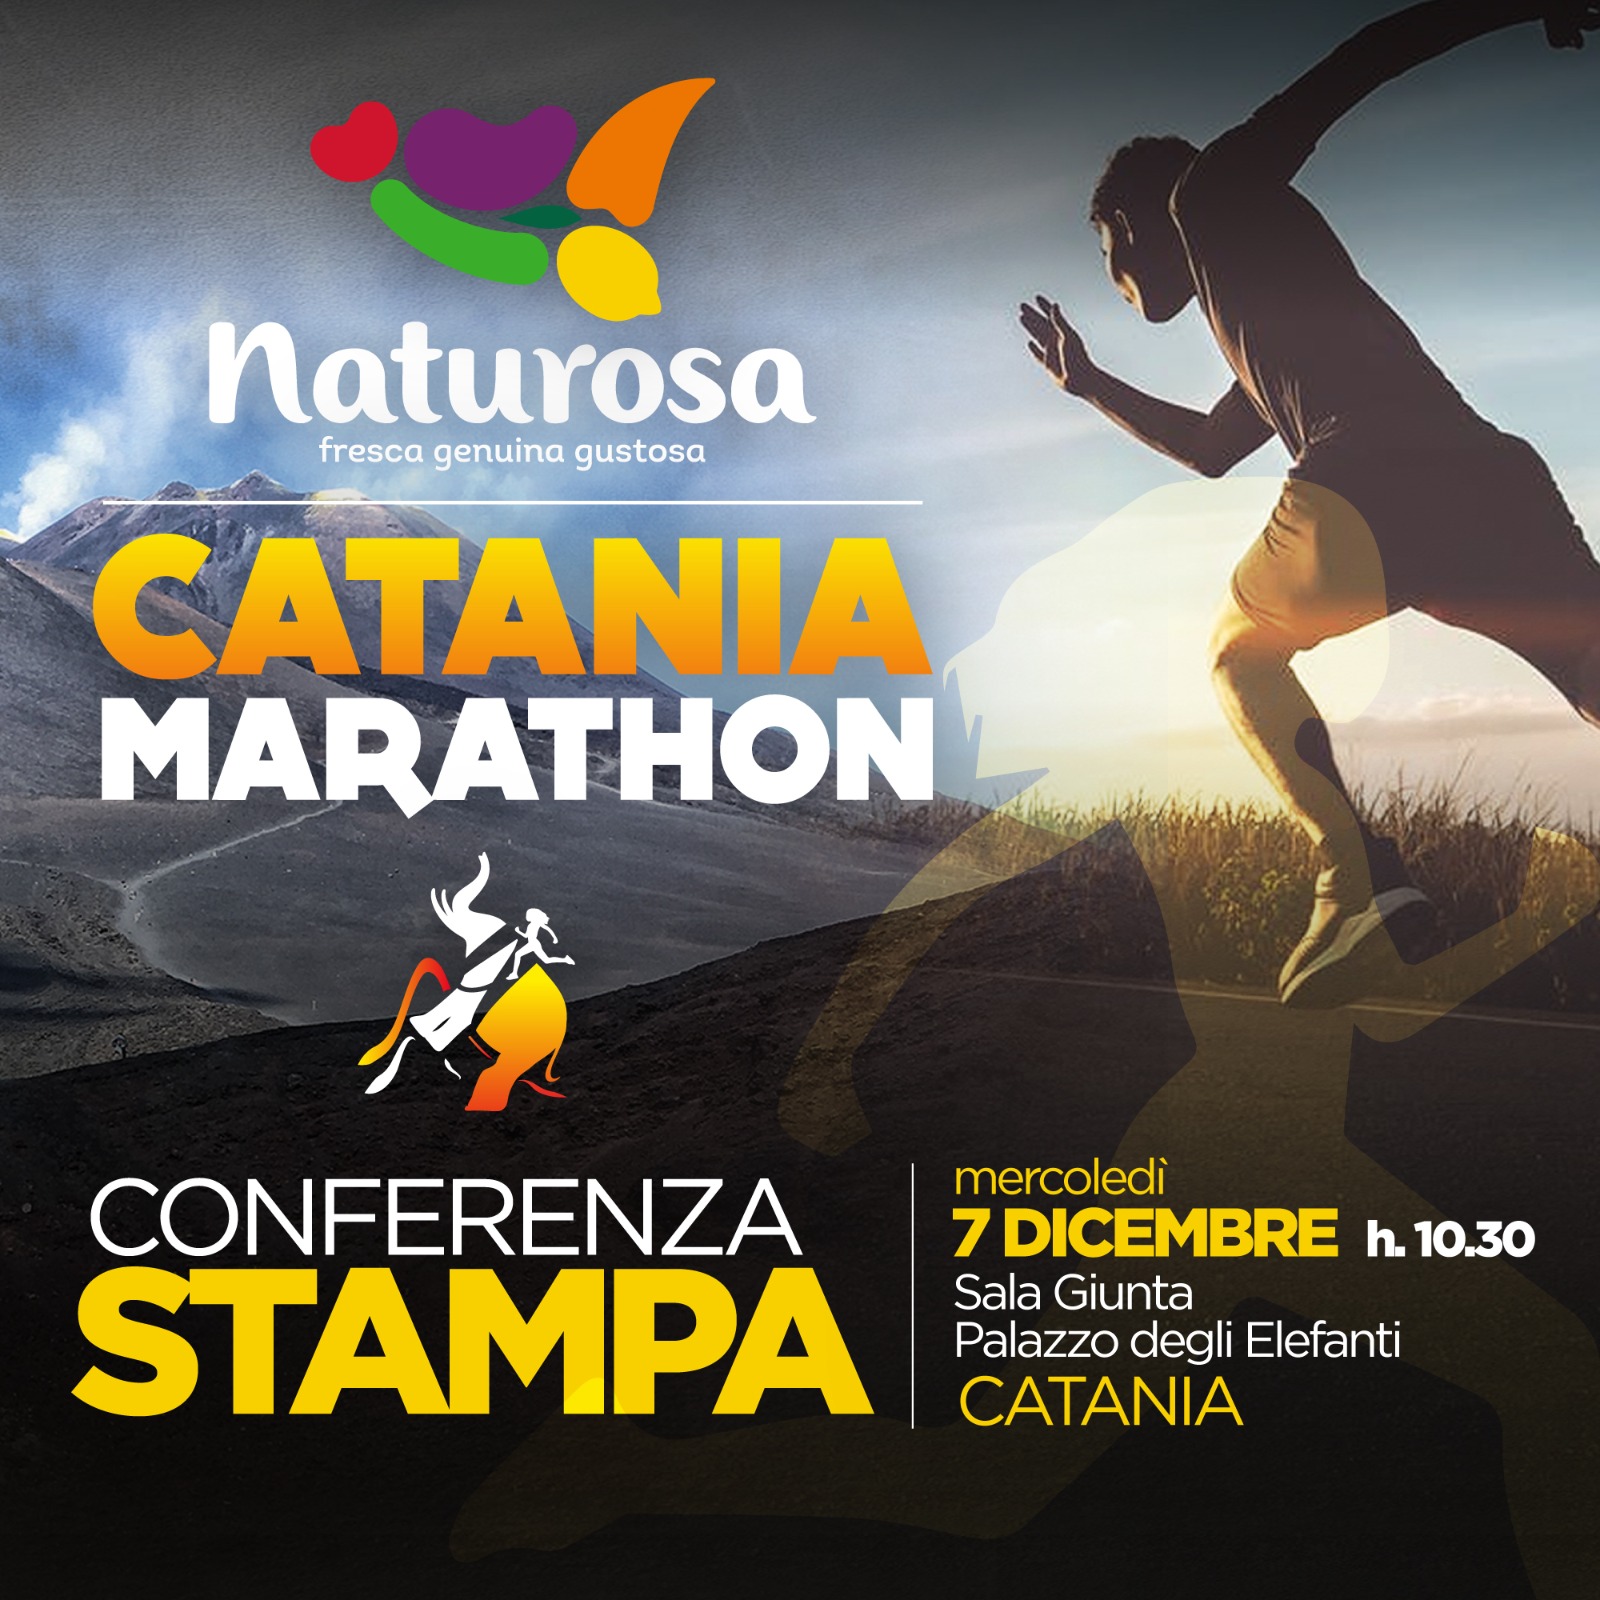 Mercoledì 7 dicembre la presentazione della Naturosa Catania Marathon